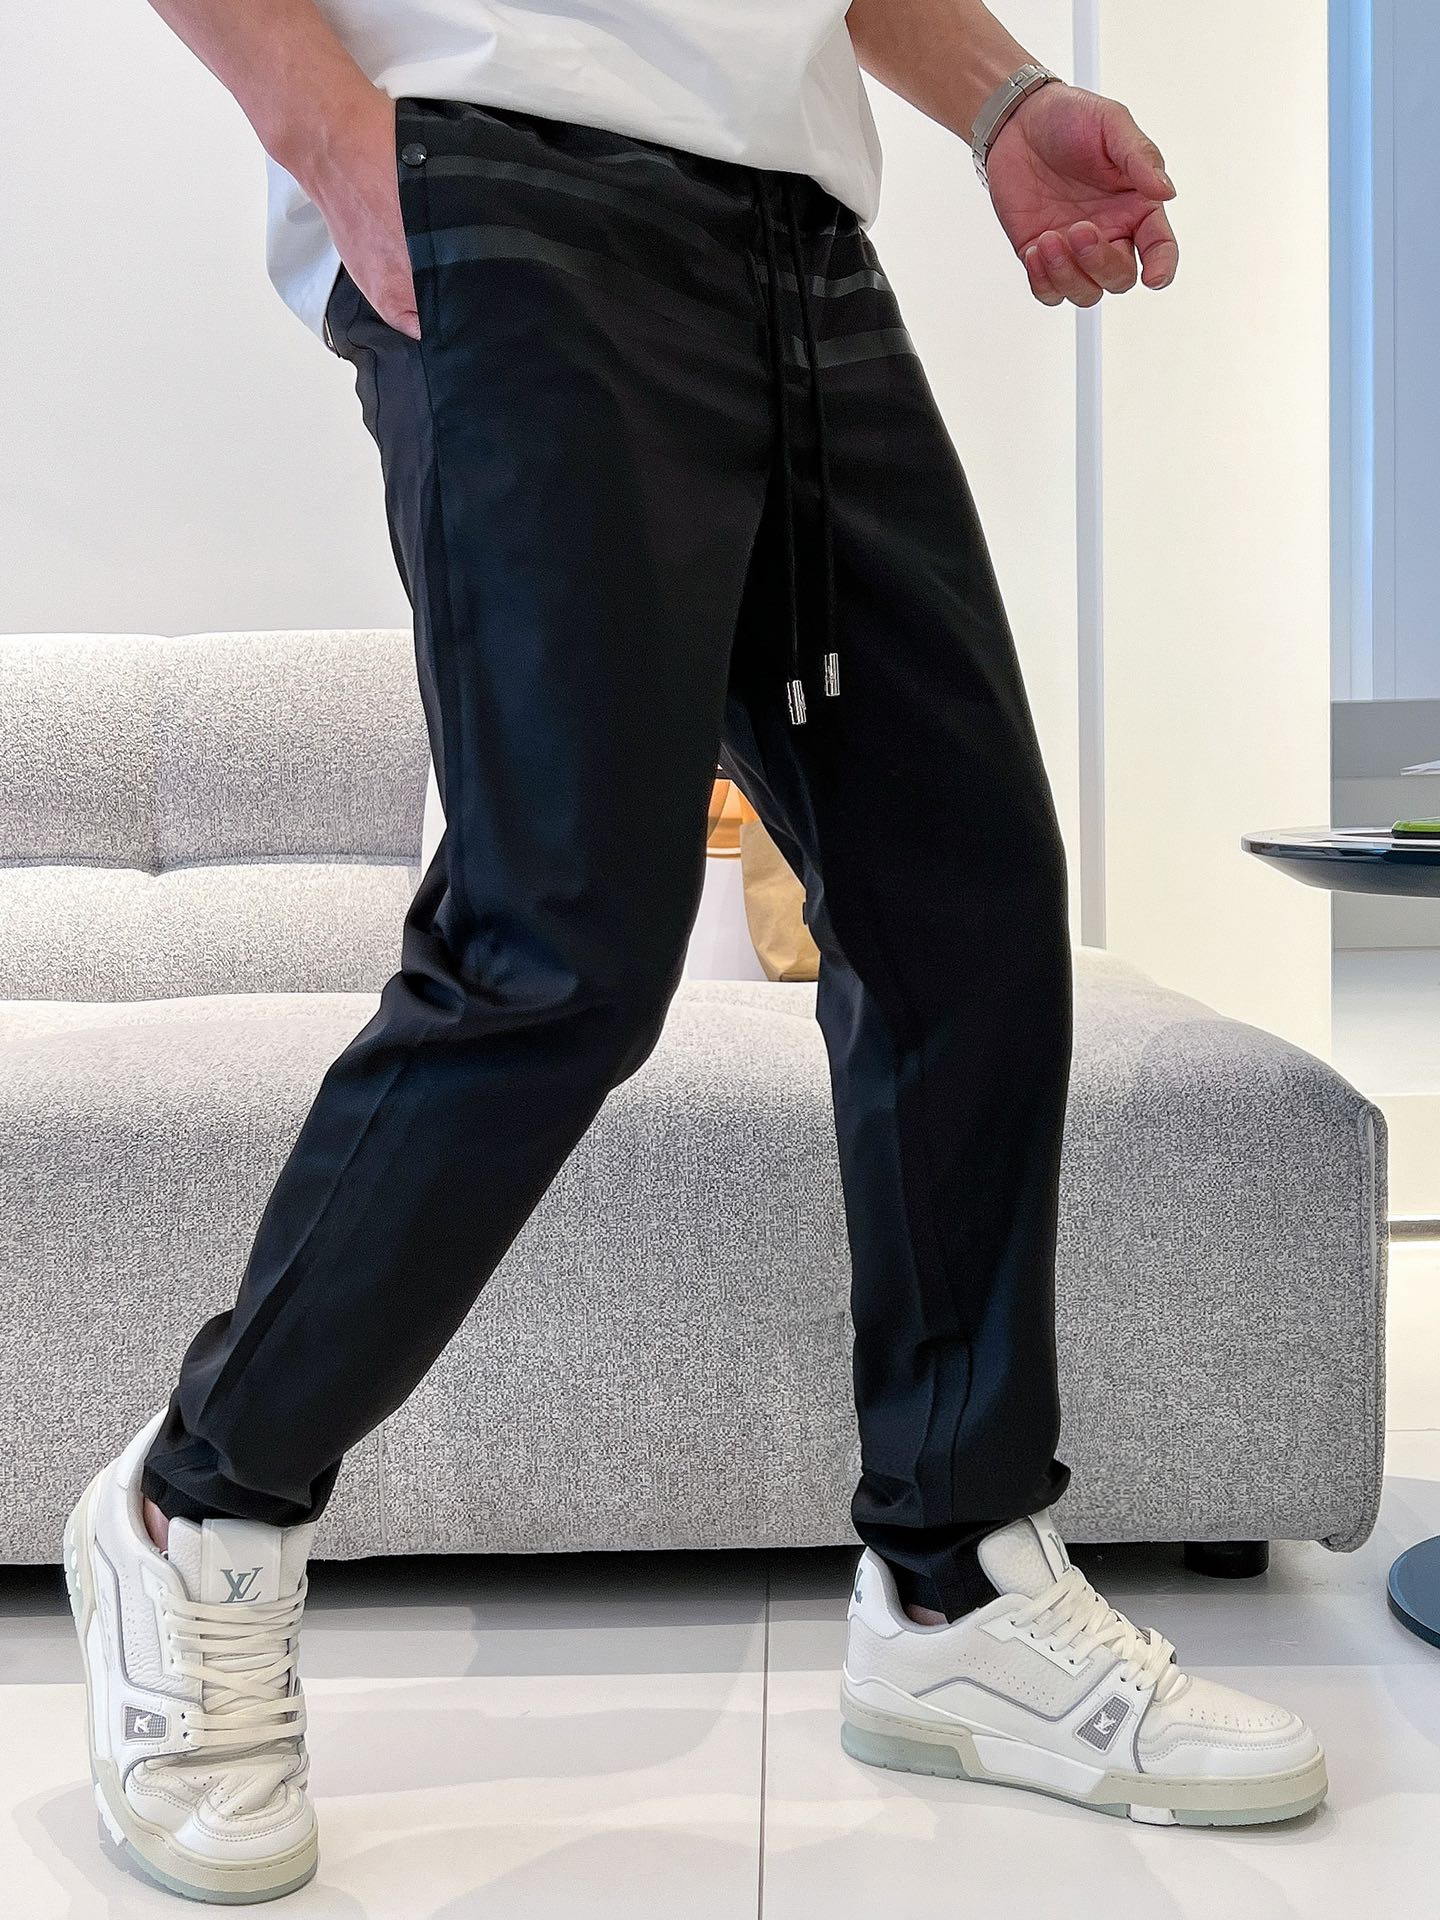 Prada男士休闲裤最新款上身版型无敌正！绝对可以闭眼收的一款此款裤子非常百搭弹力腰围,日常上班户外运动